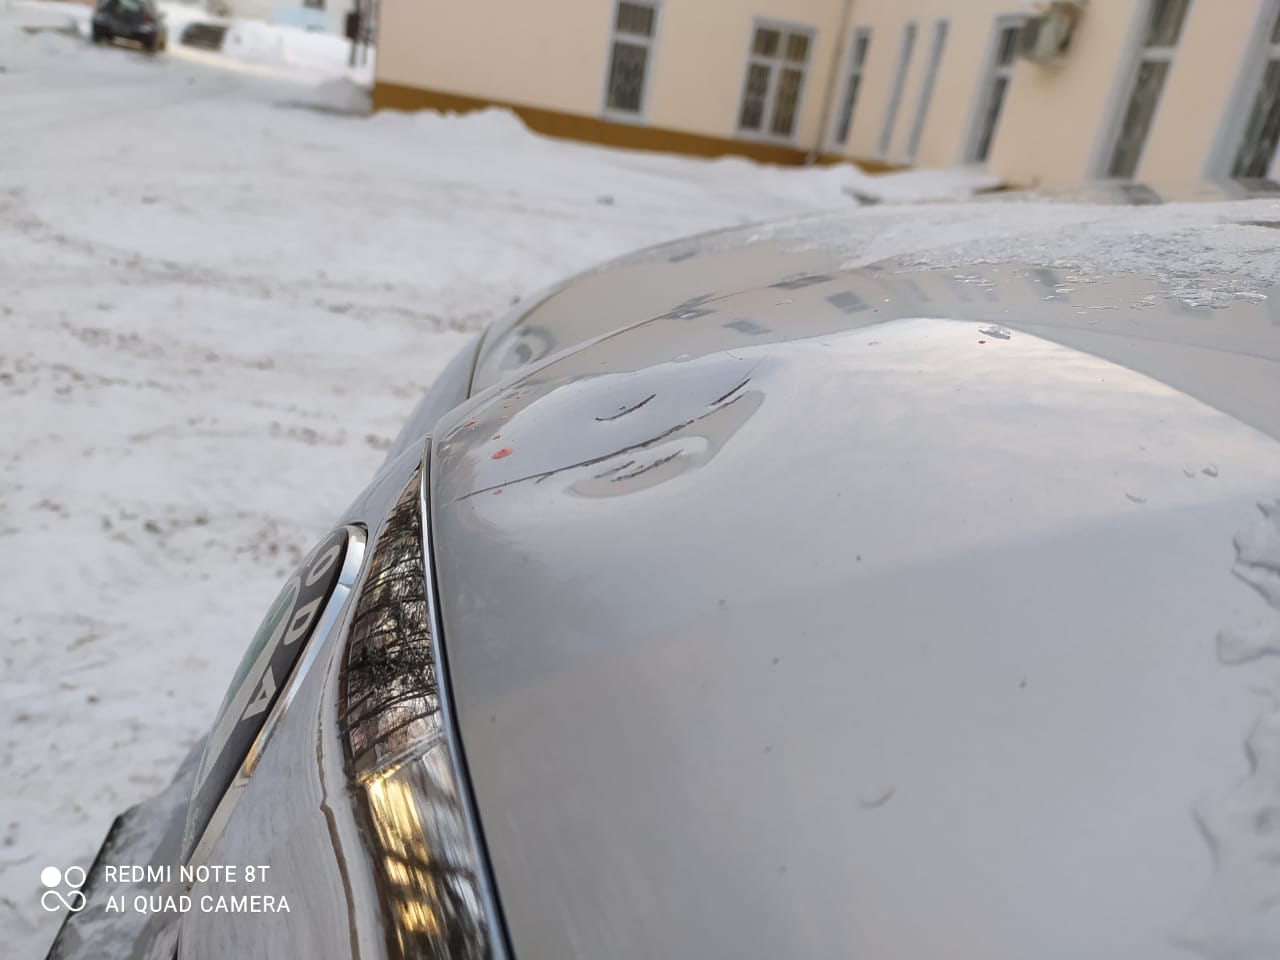 В Кирове мужчина во дворе ножом изрезал Toyota Land Cruiser и Škoda Yeti